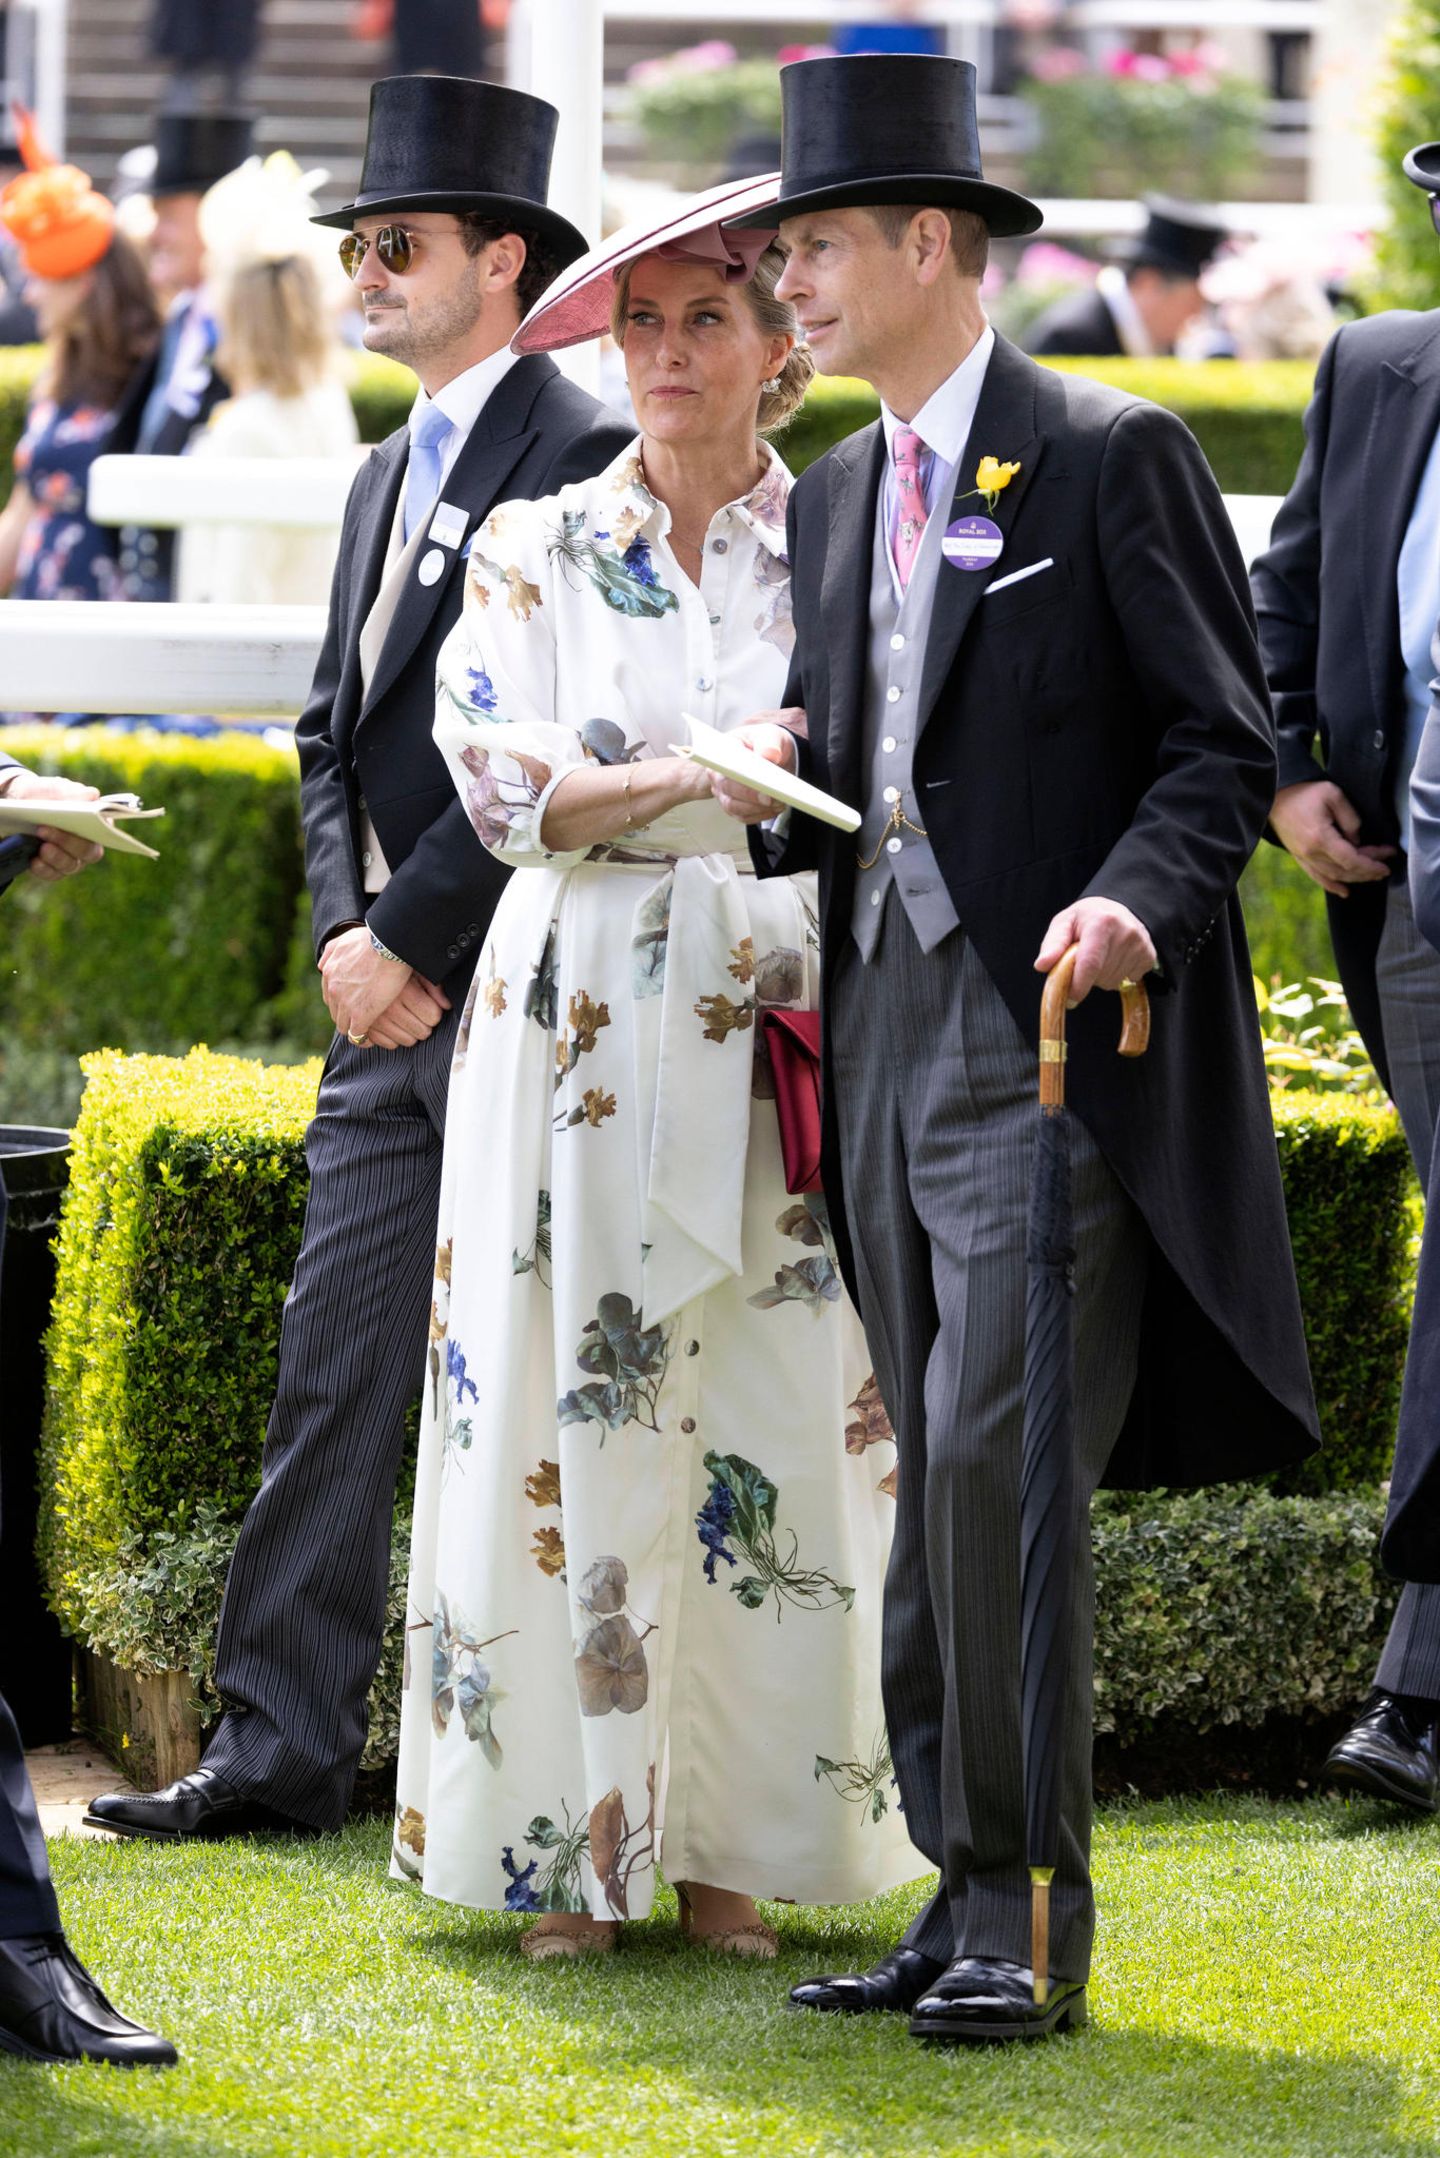 Ganz bezaubernd sieht auch Herzogin Sophie im cremefarbenen Blumenkleid mit Knopfleiste aus. Prinz Edward gibt an ihrer Seite aus im Frack natürlich den perfekten Gentleman.